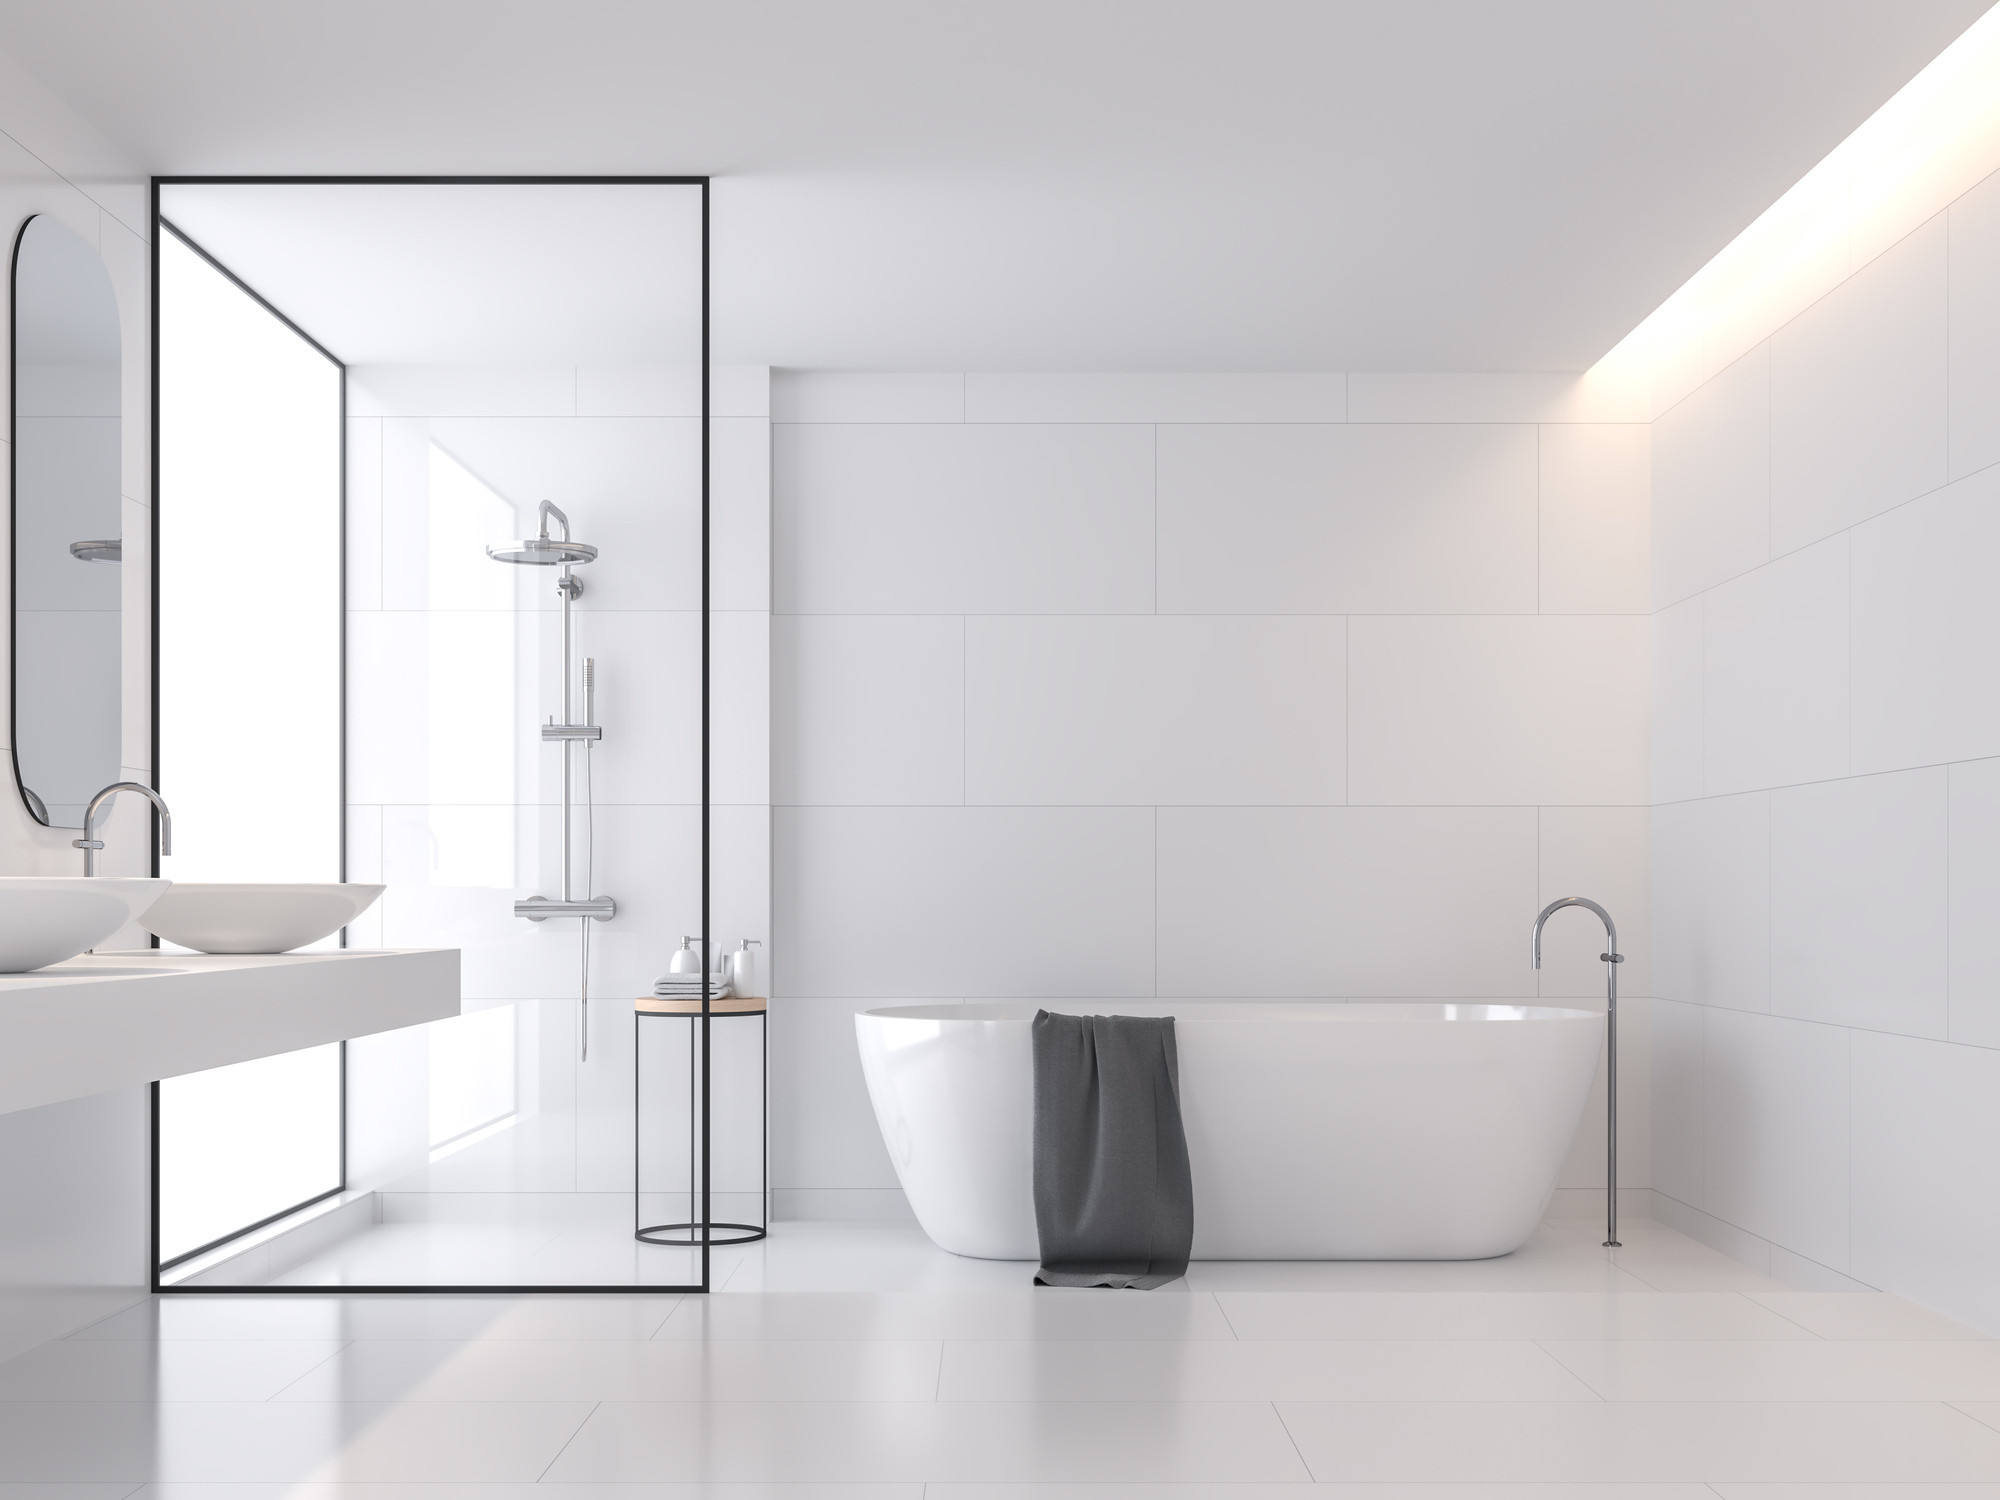 Begehbare Dusche: Drei Varianten Für Dein Bad | Obi pertaining to Badezimmer Ebenerdige Dusche